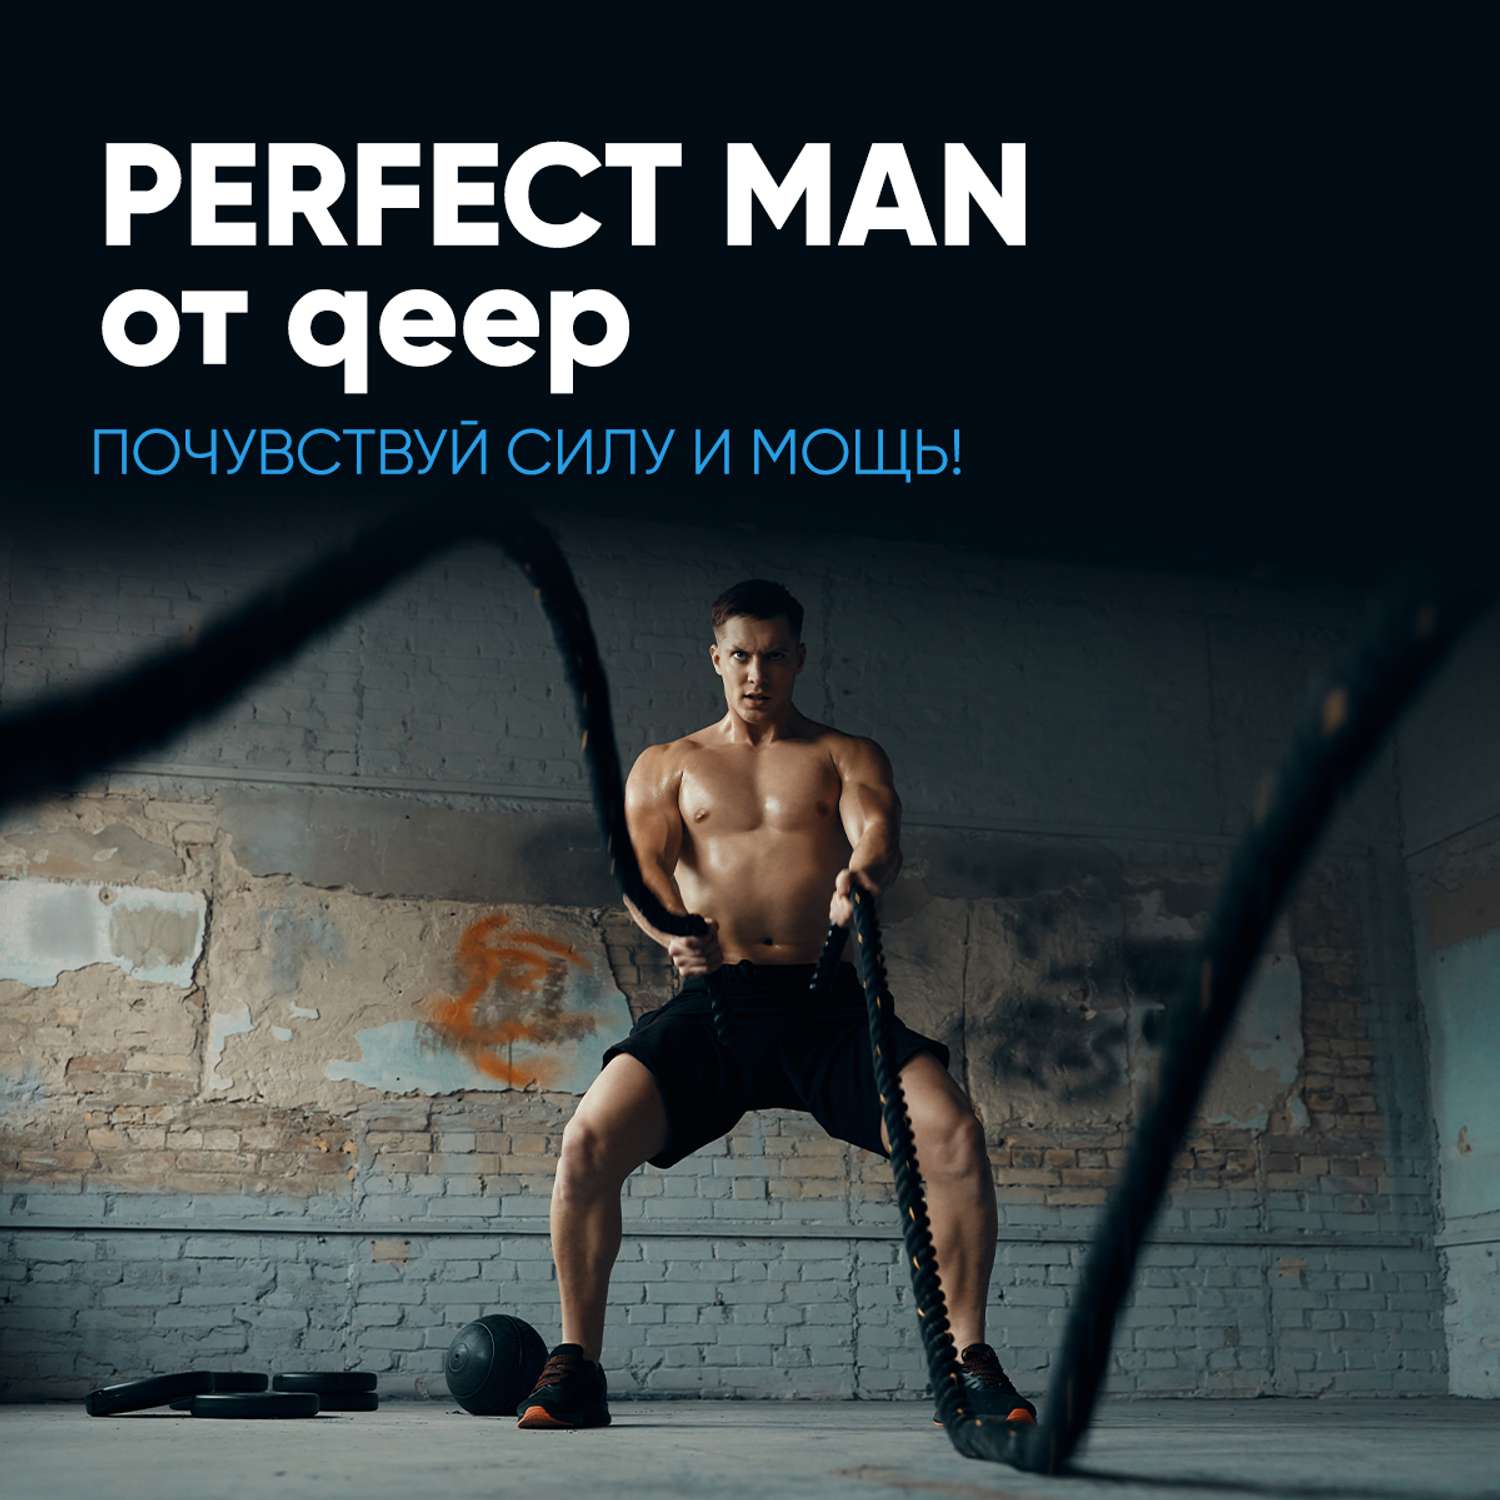 Тестостерон бустер qeep бад для потенции и мышц спортивный - фото 8